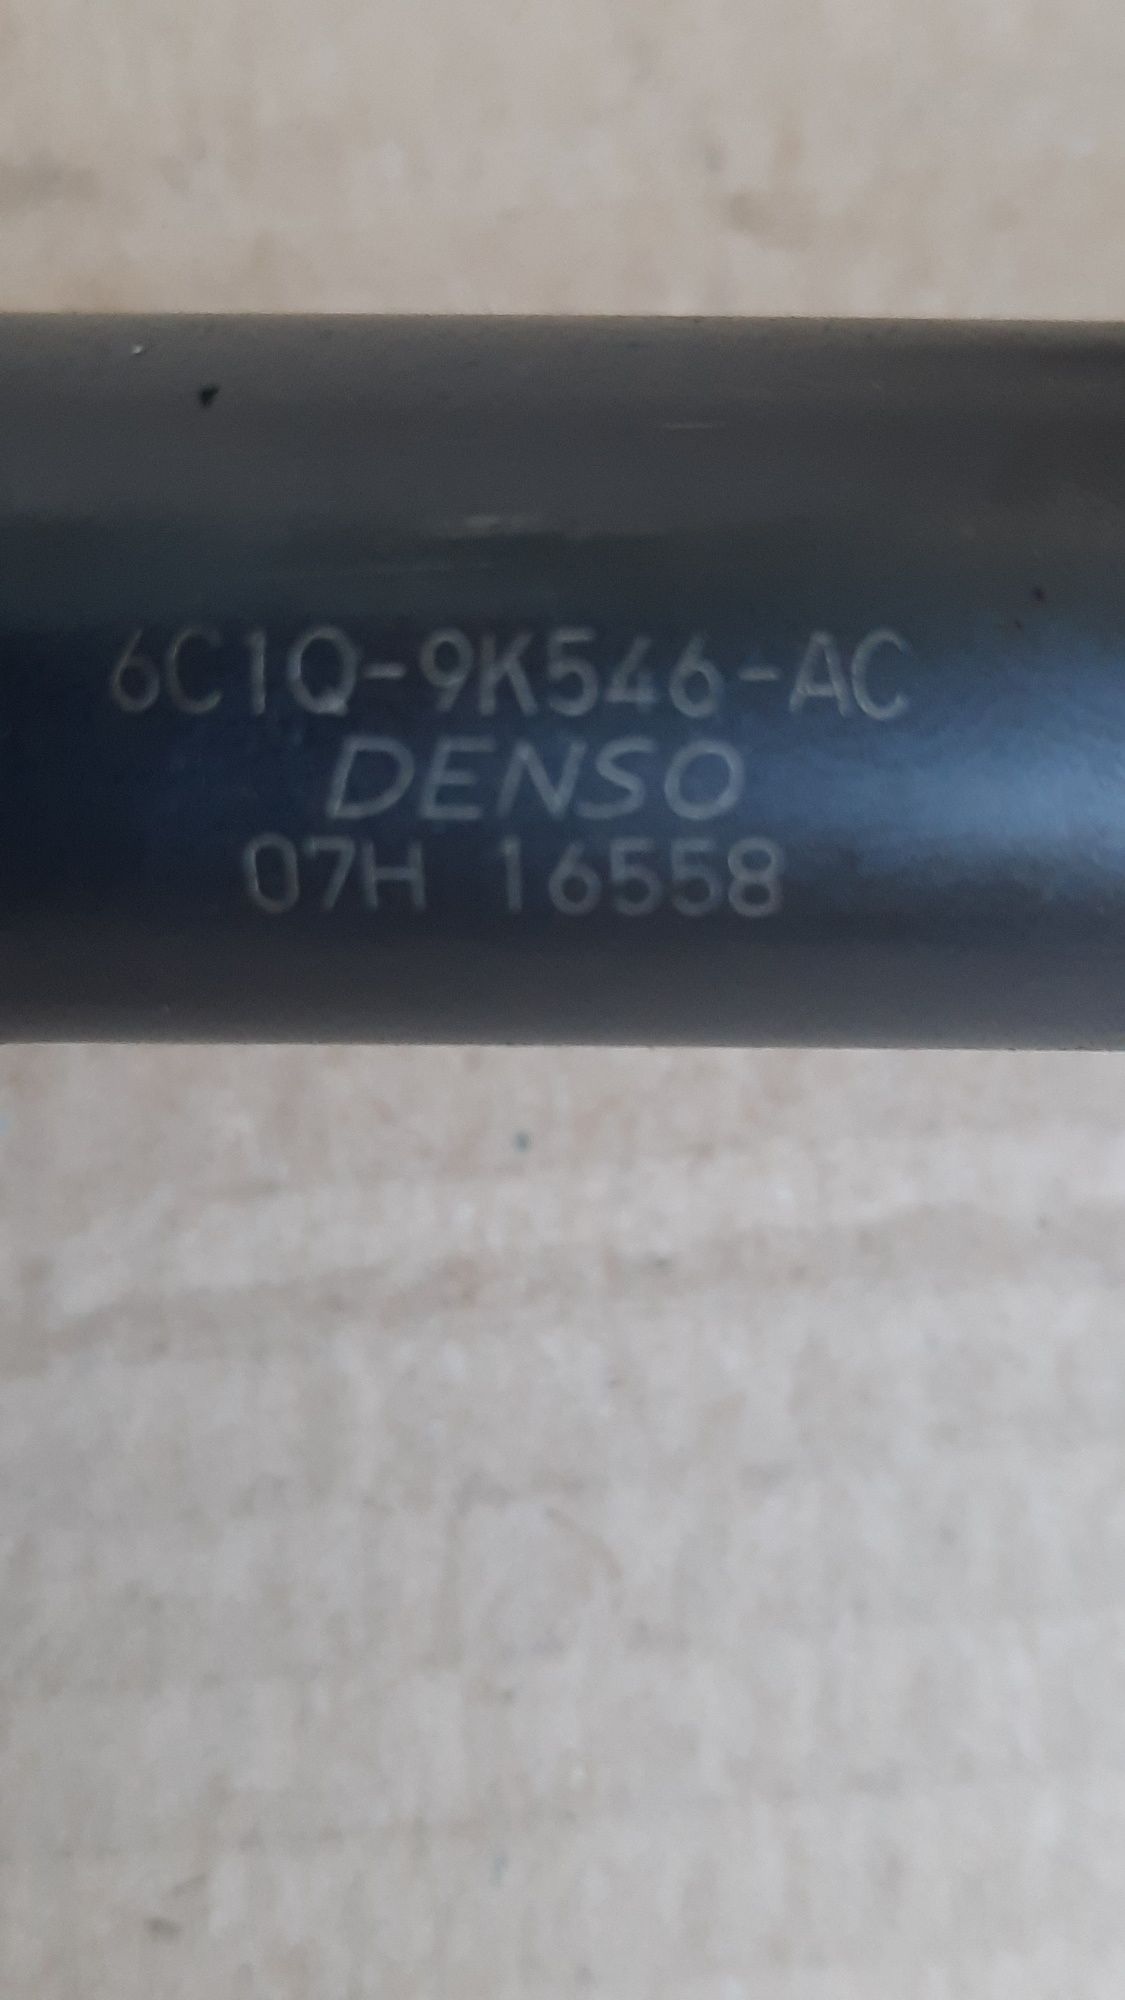 Форсунки Denso 6C1Q-9K546-AS Форд  2.2 TDCI Пежо Ситроен Фиат 2.2 HDI